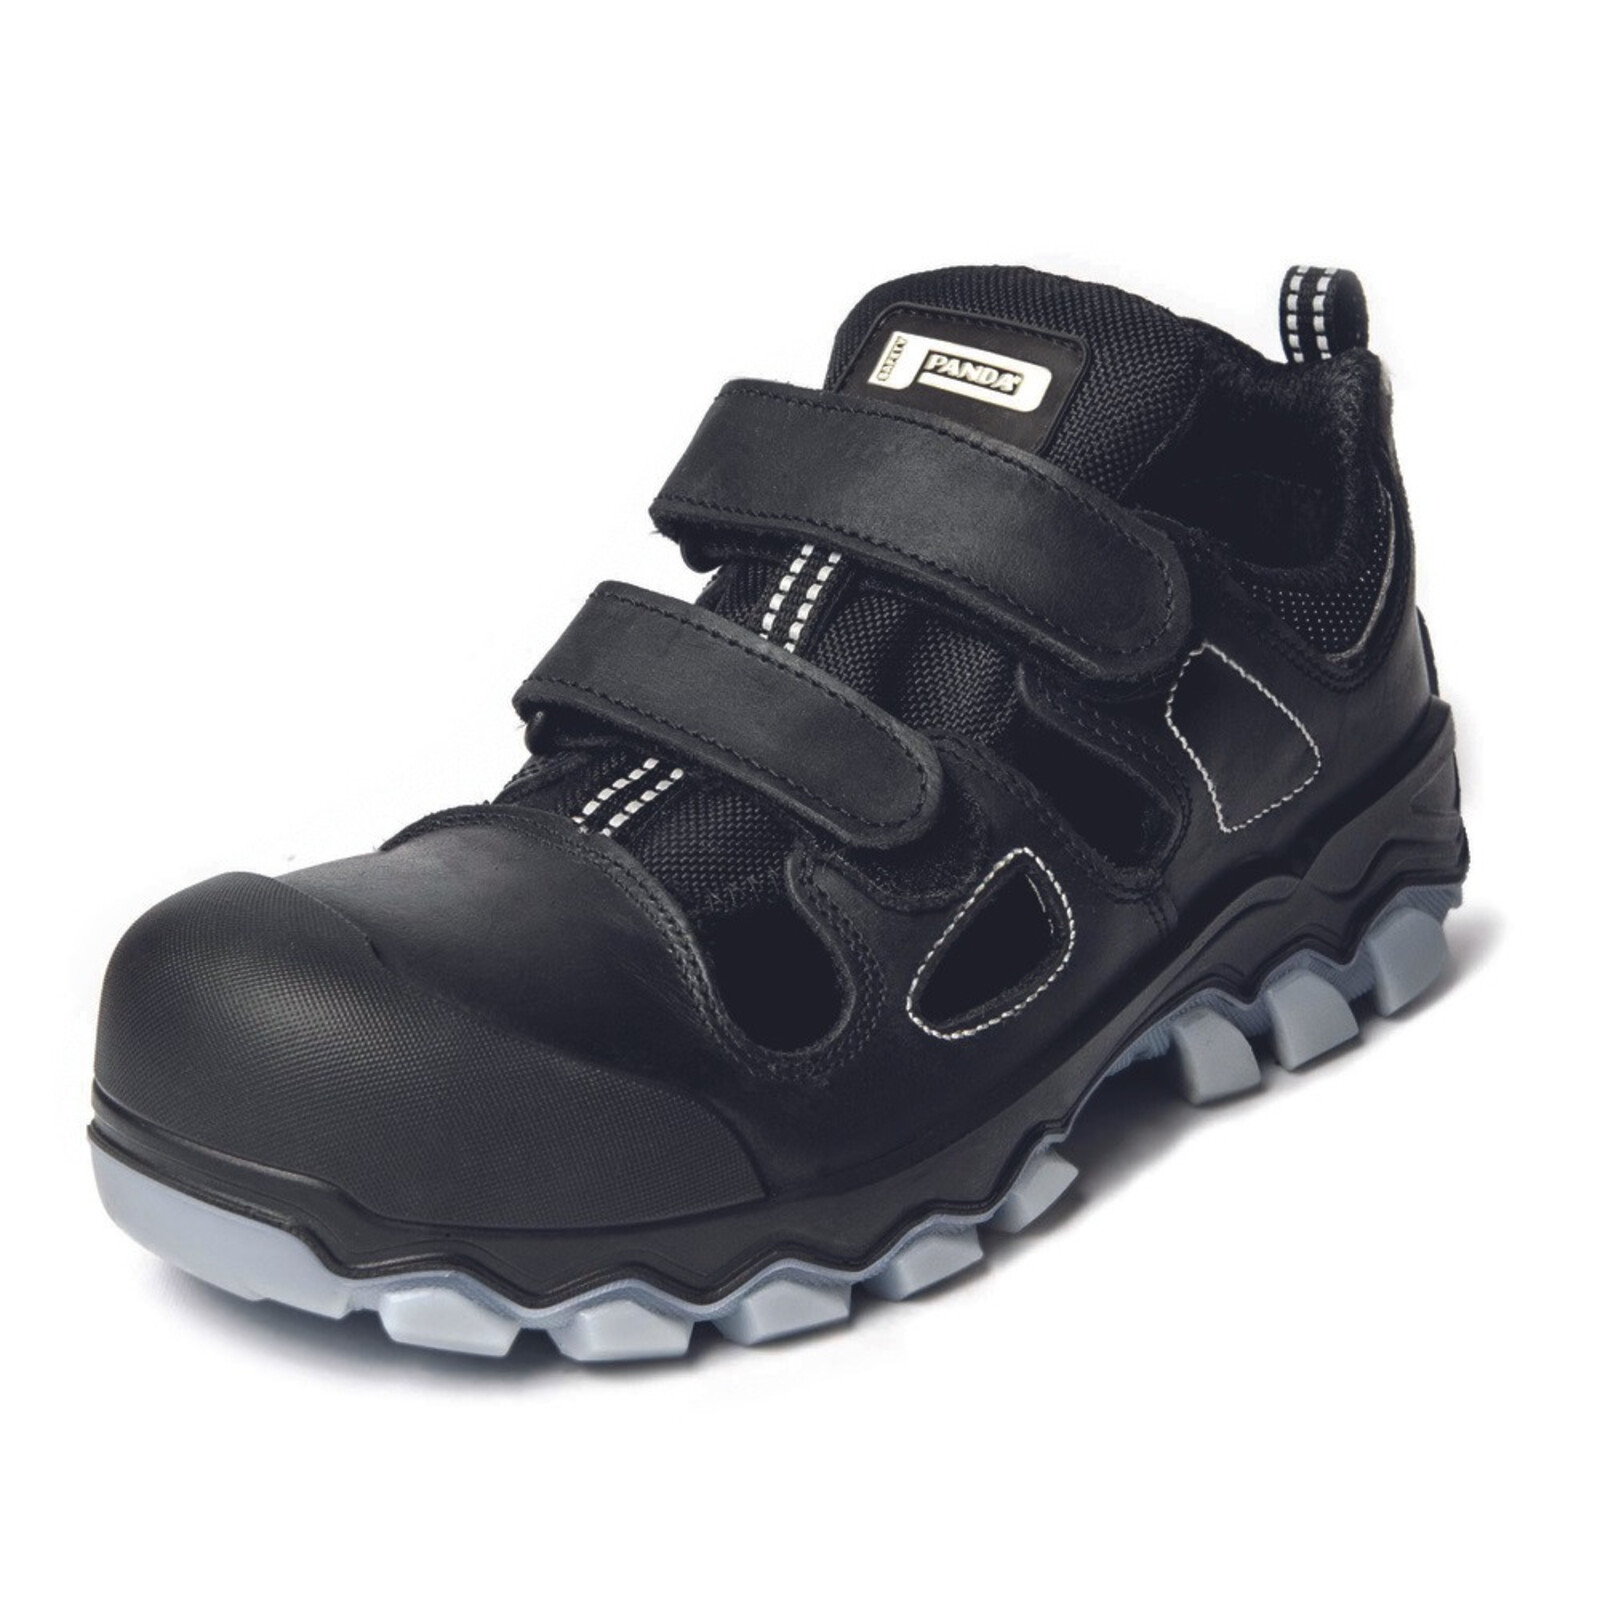 Bezpečnostné sandále Panda Techo No. Two MF S1P SRC - veľkosť: 39, farba: čierna/sivá